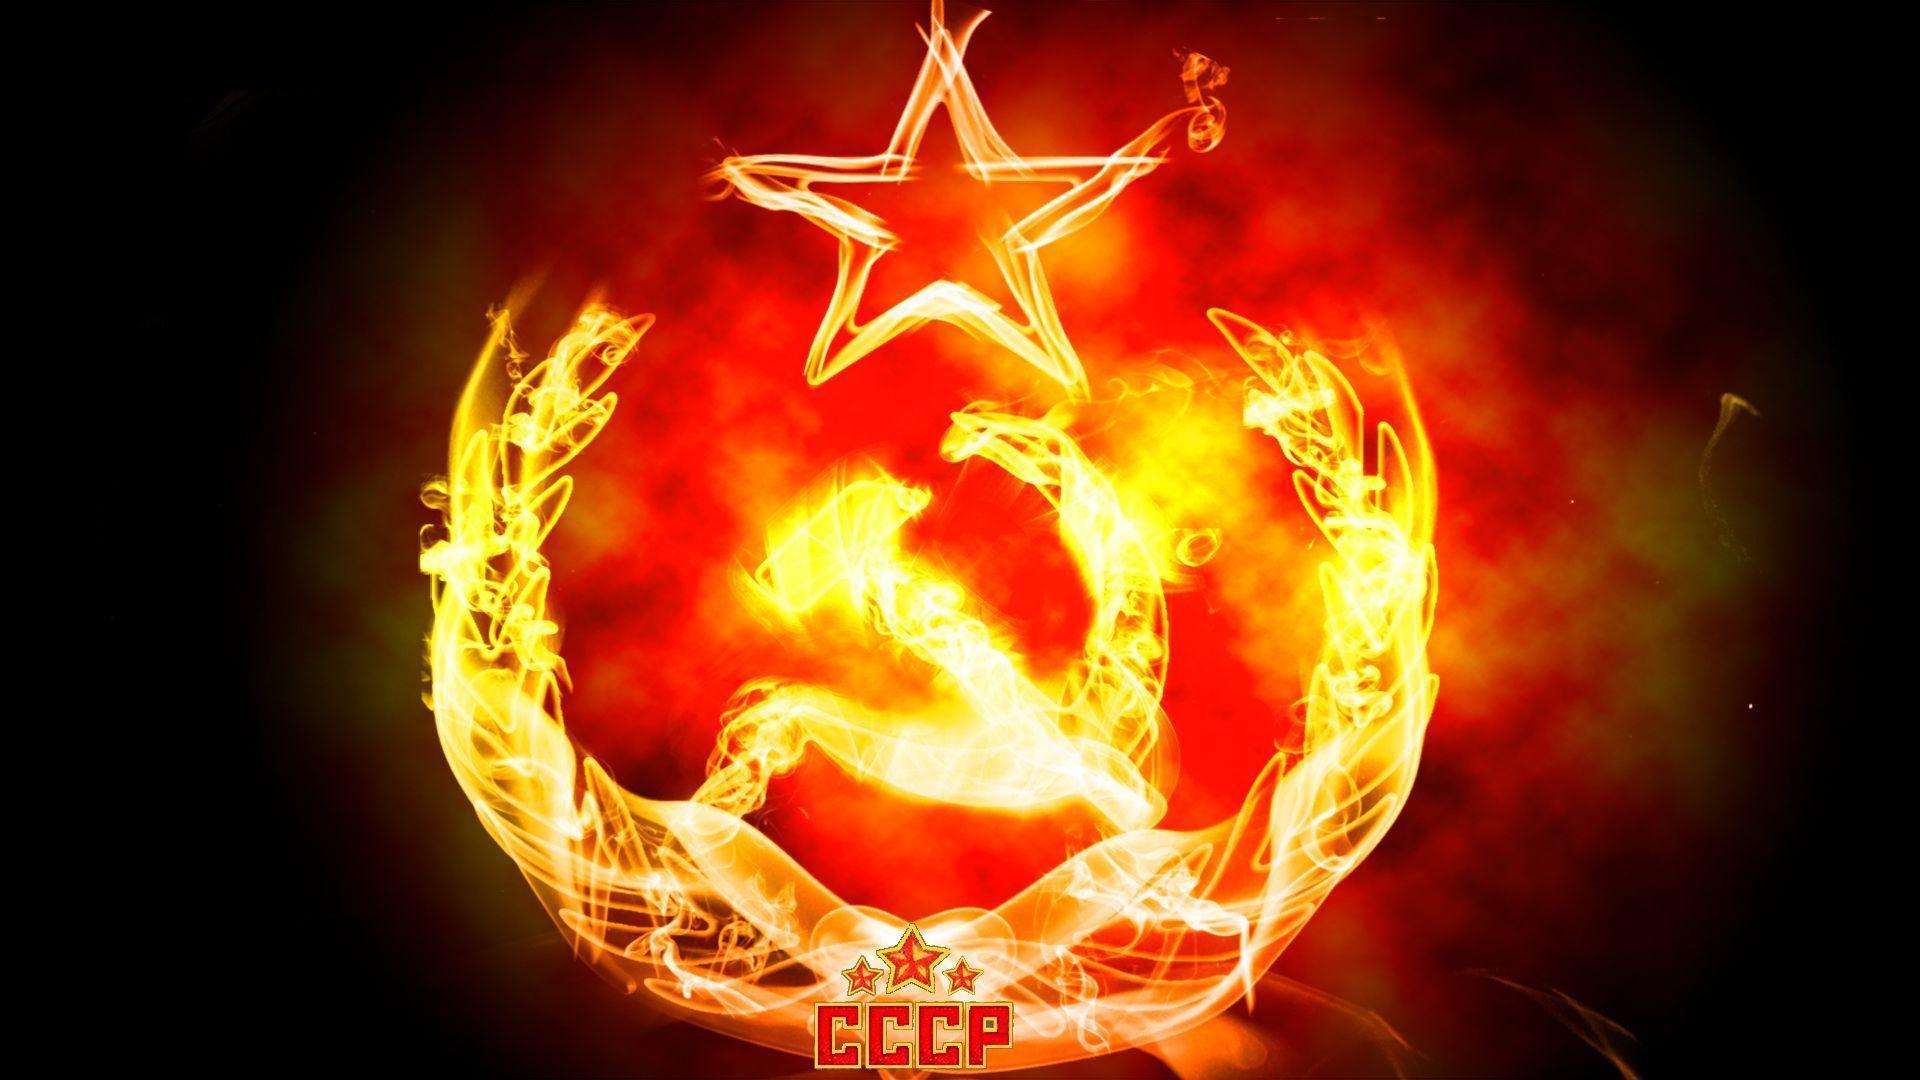 Wallpaper For > Soviet Emblem Wallpaper